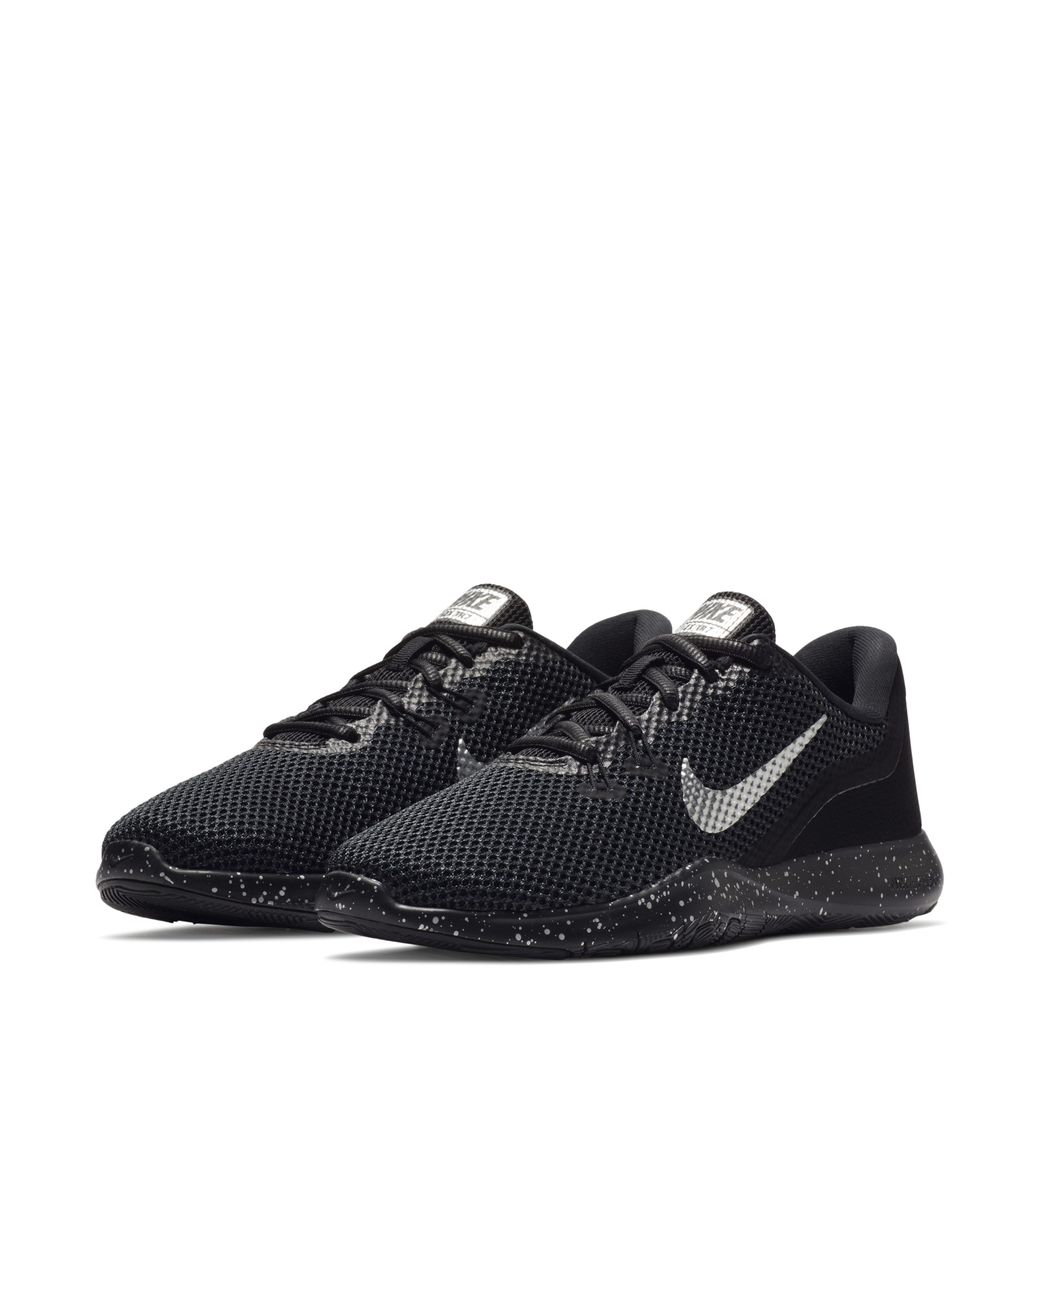 Nike Flex Tr 7 Premium Training Shoe in Black | Lyst UK